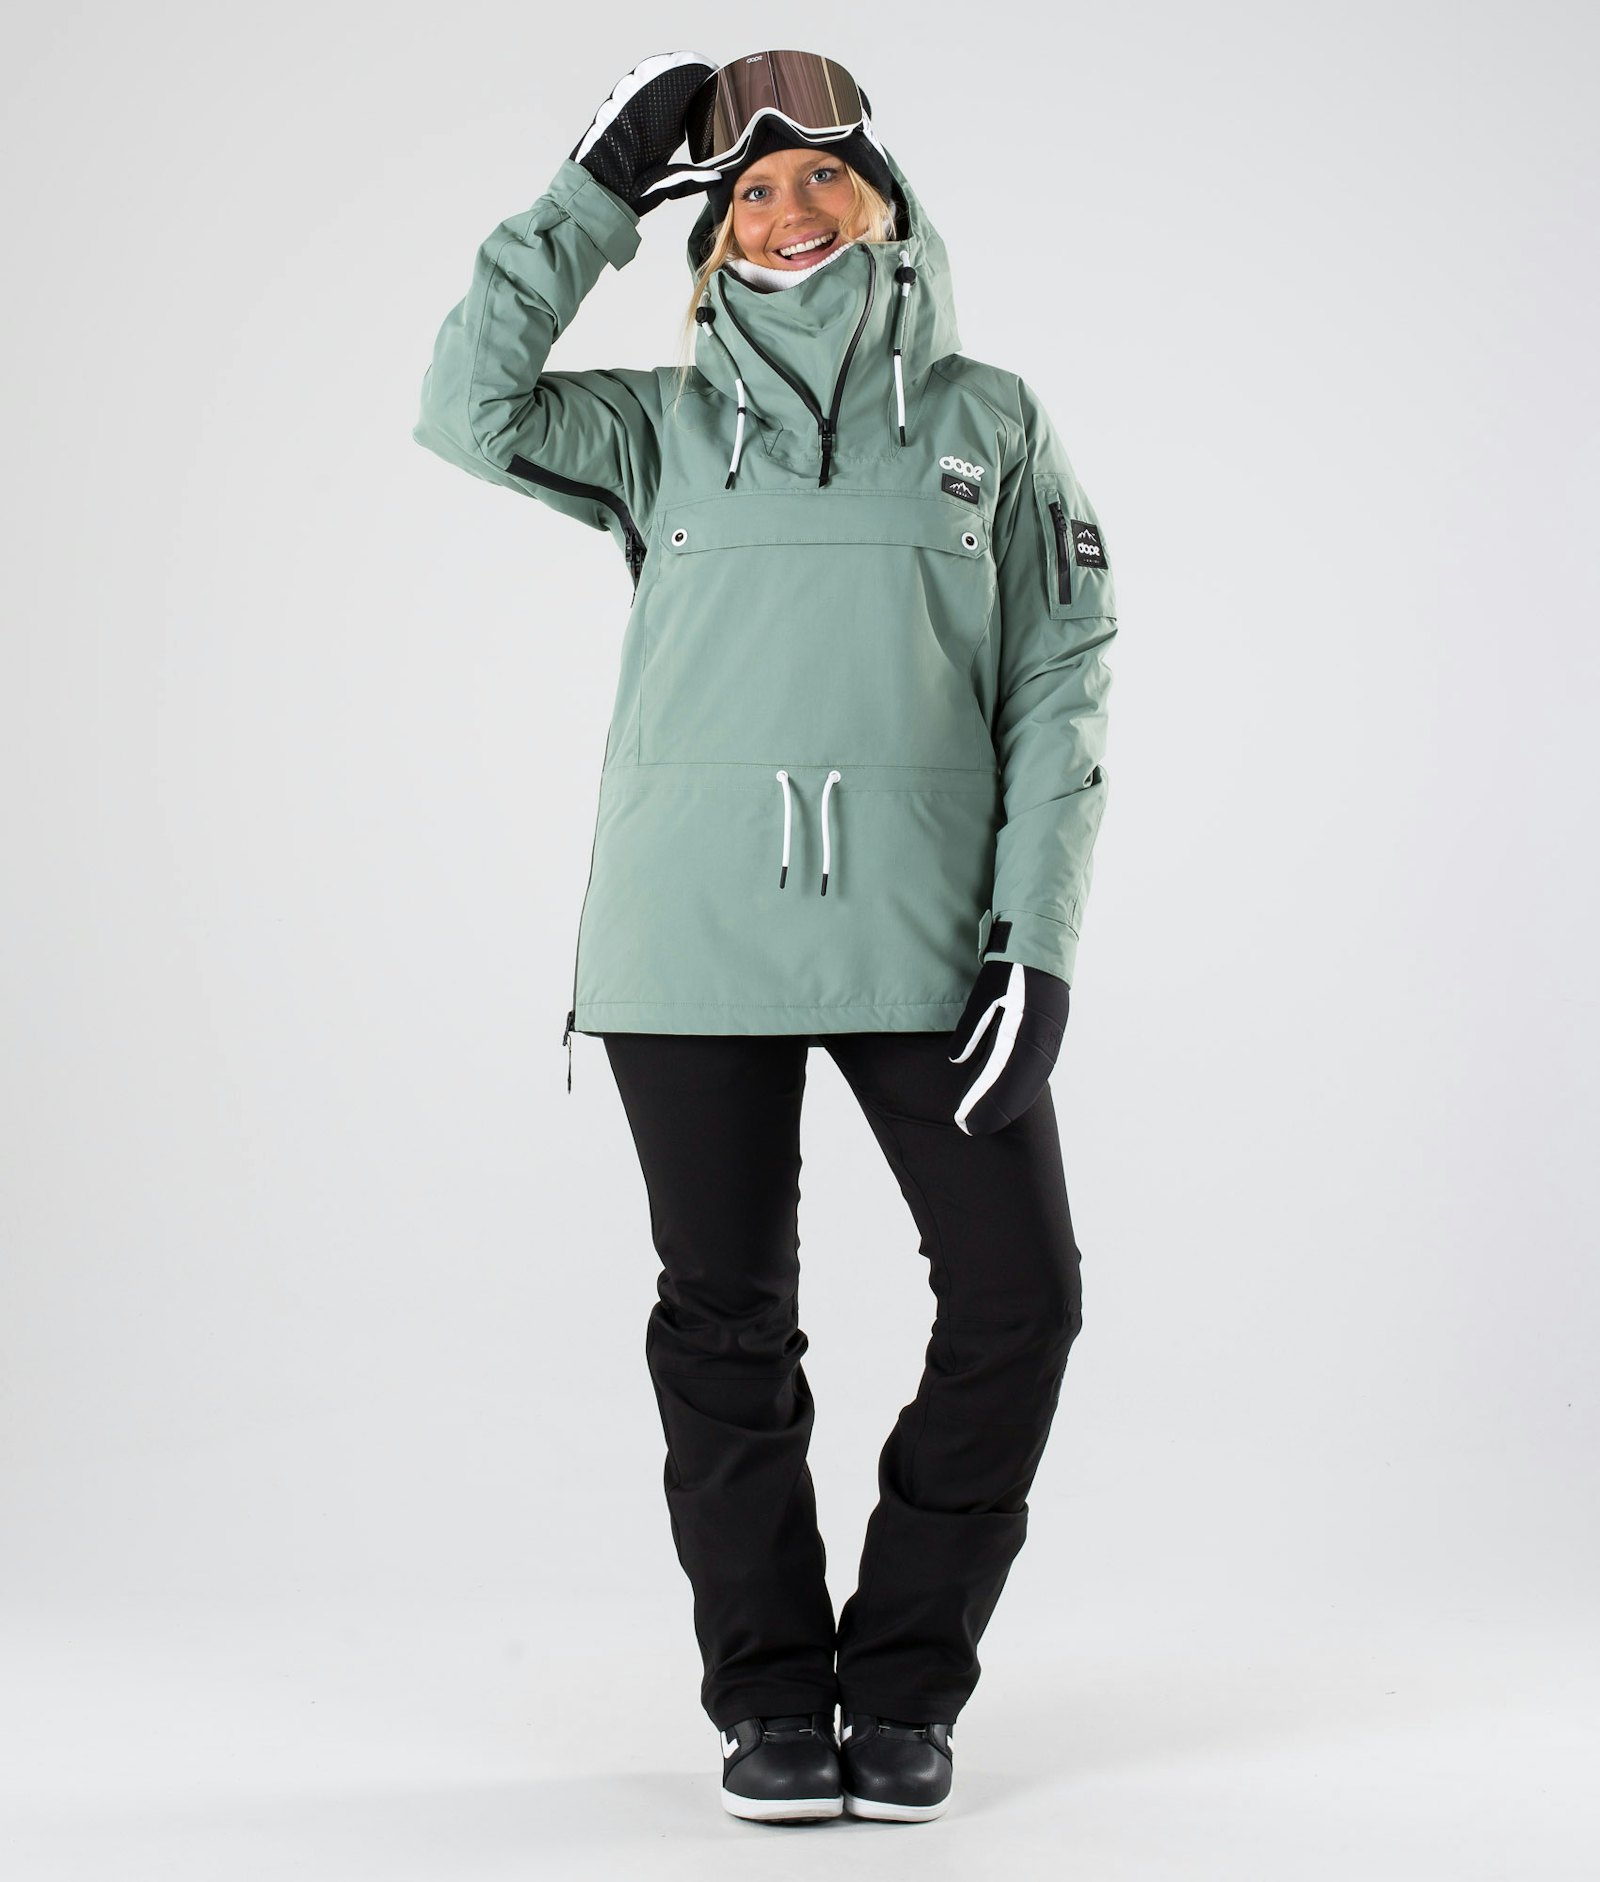 Annok W 2019 Snowboard Jacket Women Faded Green